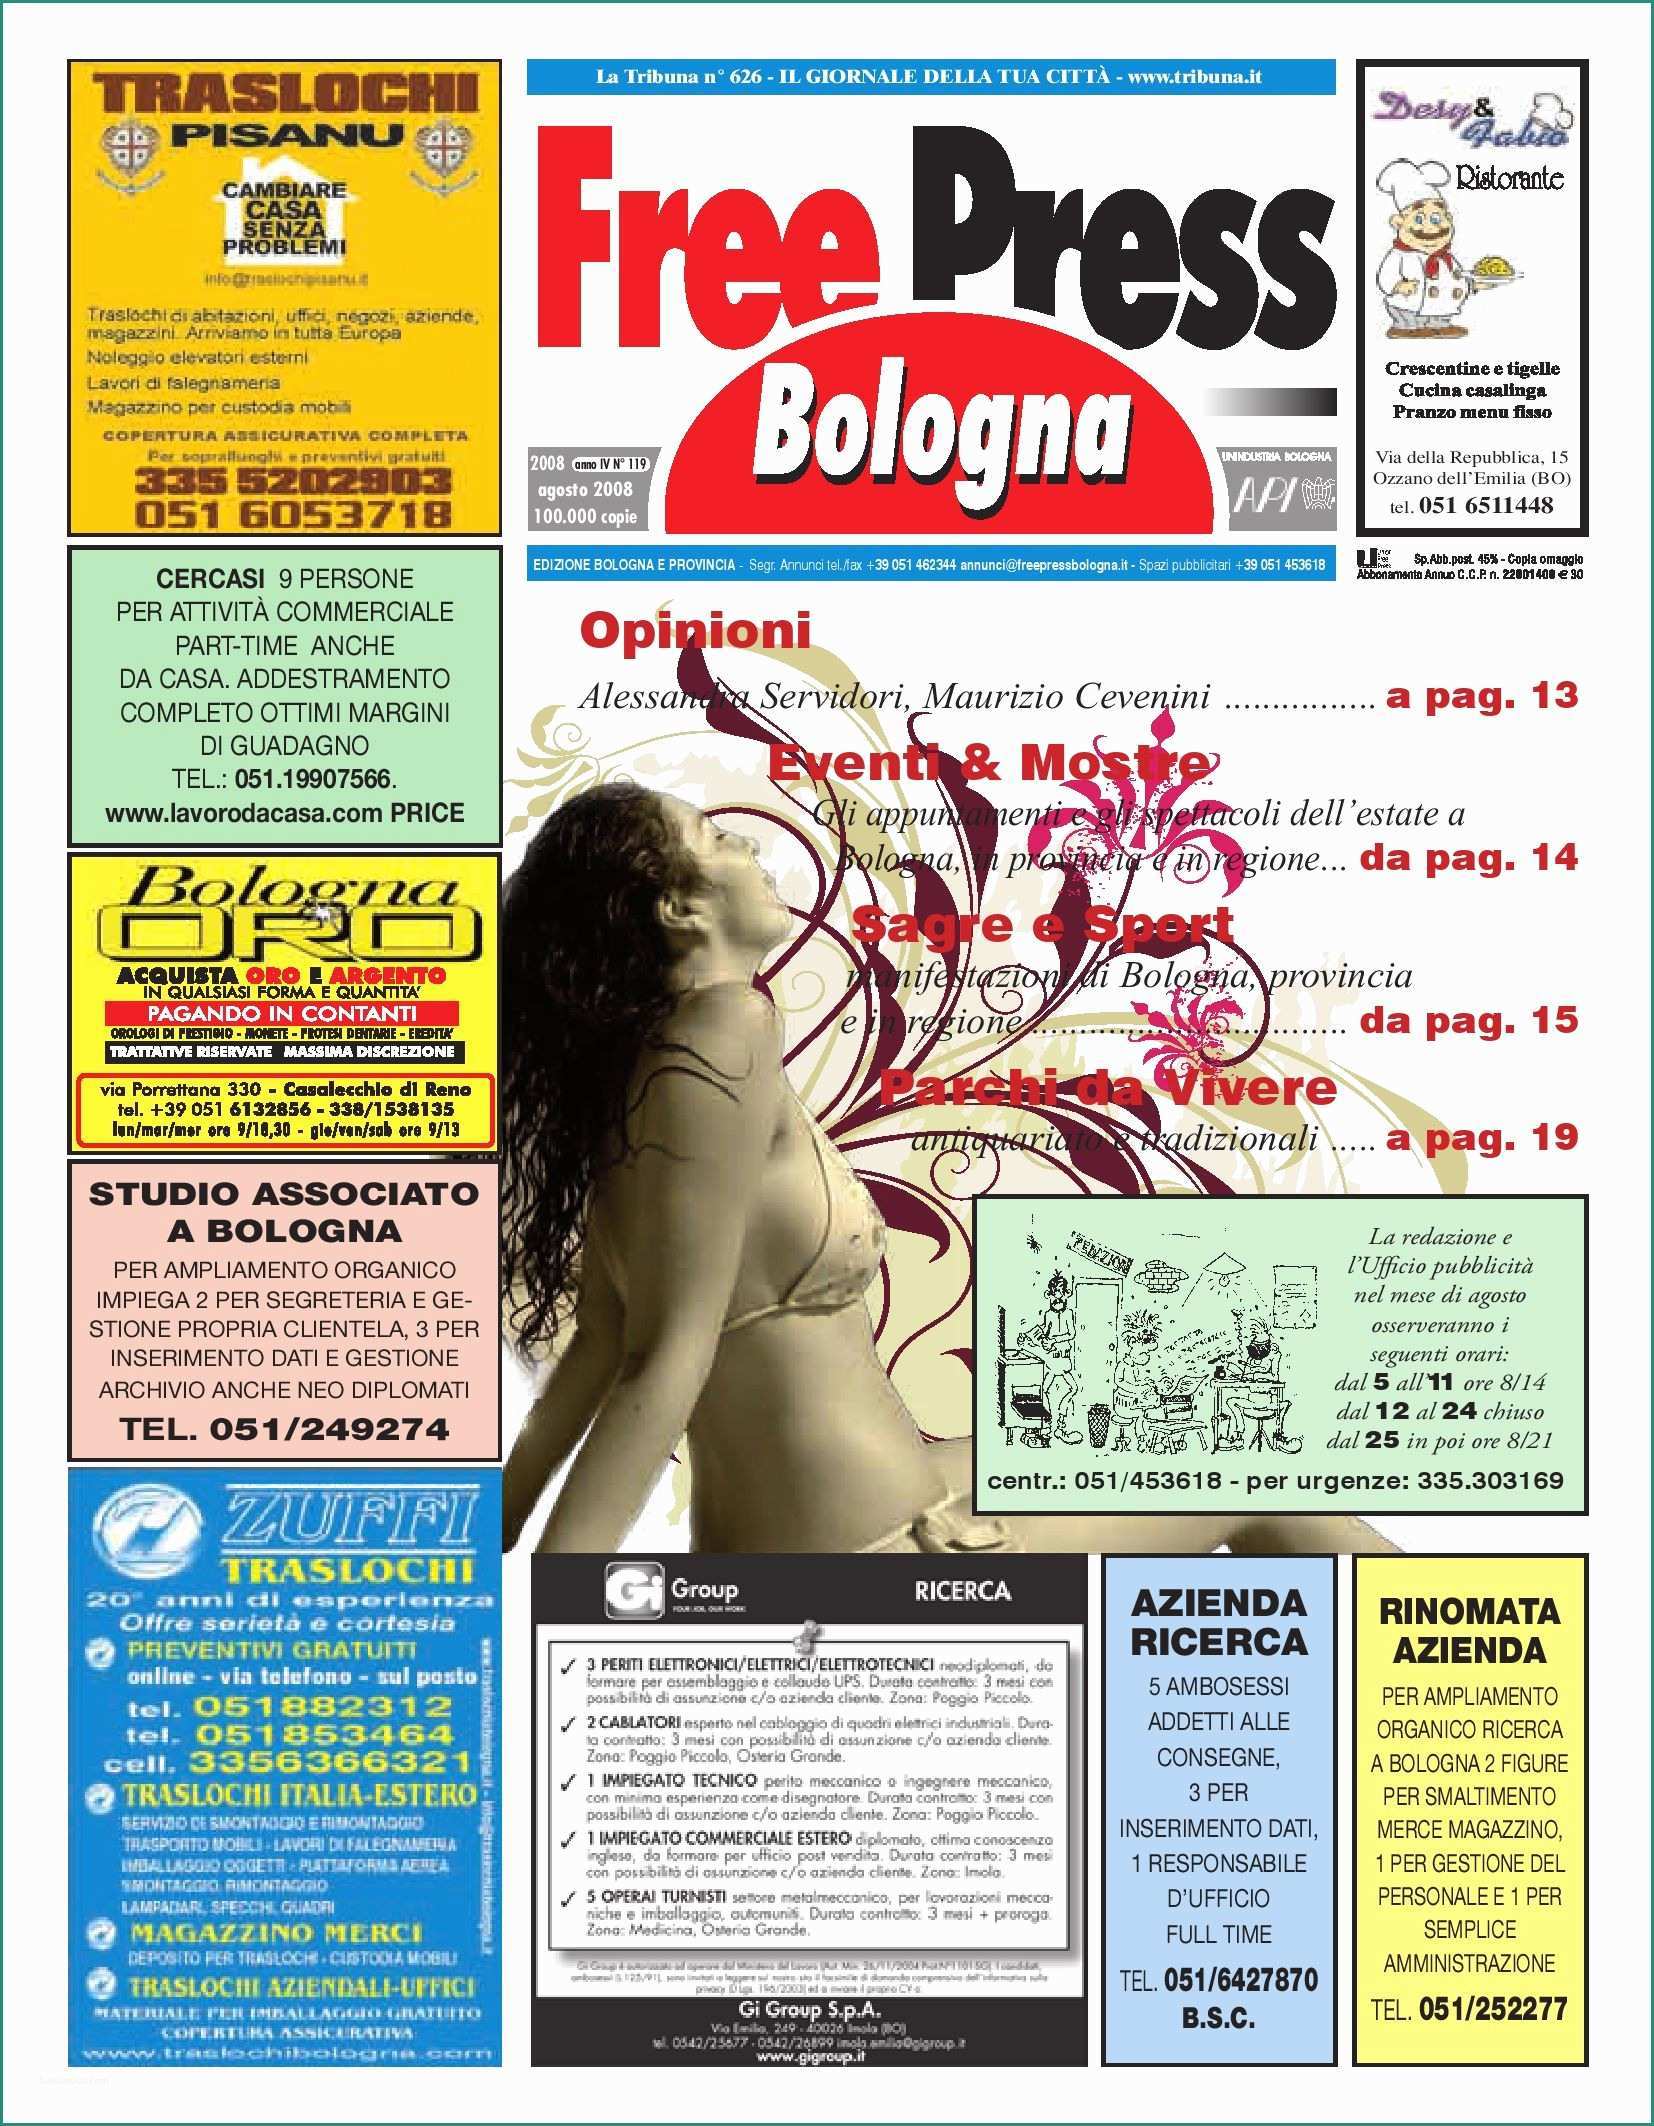 Emmelunga Catalogo E Freepress 119 by La Tribuna Srls issuu